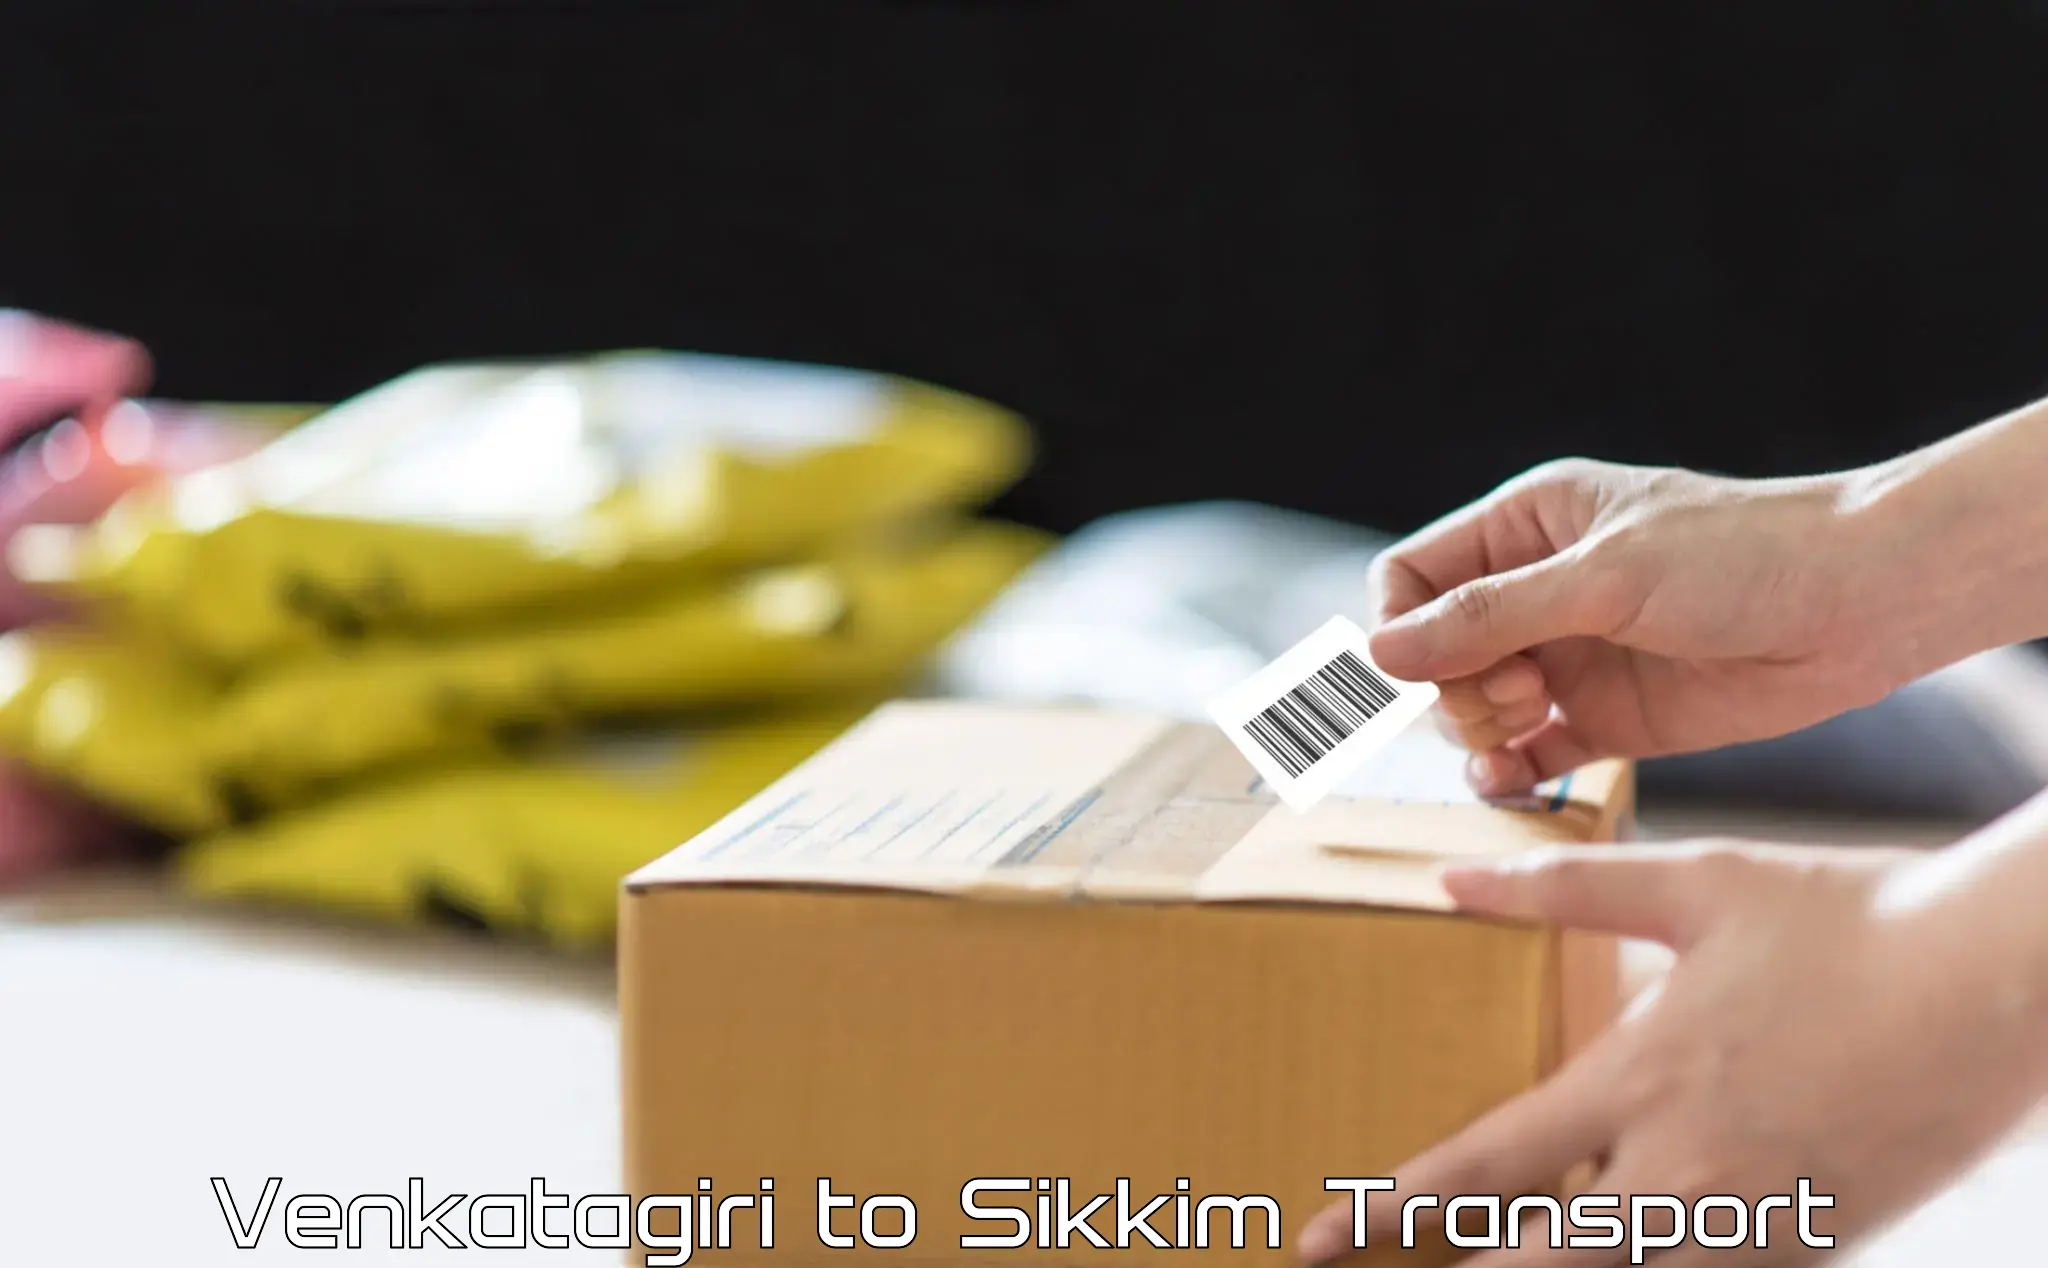 Delivery service Venkatagiri to Sikkim